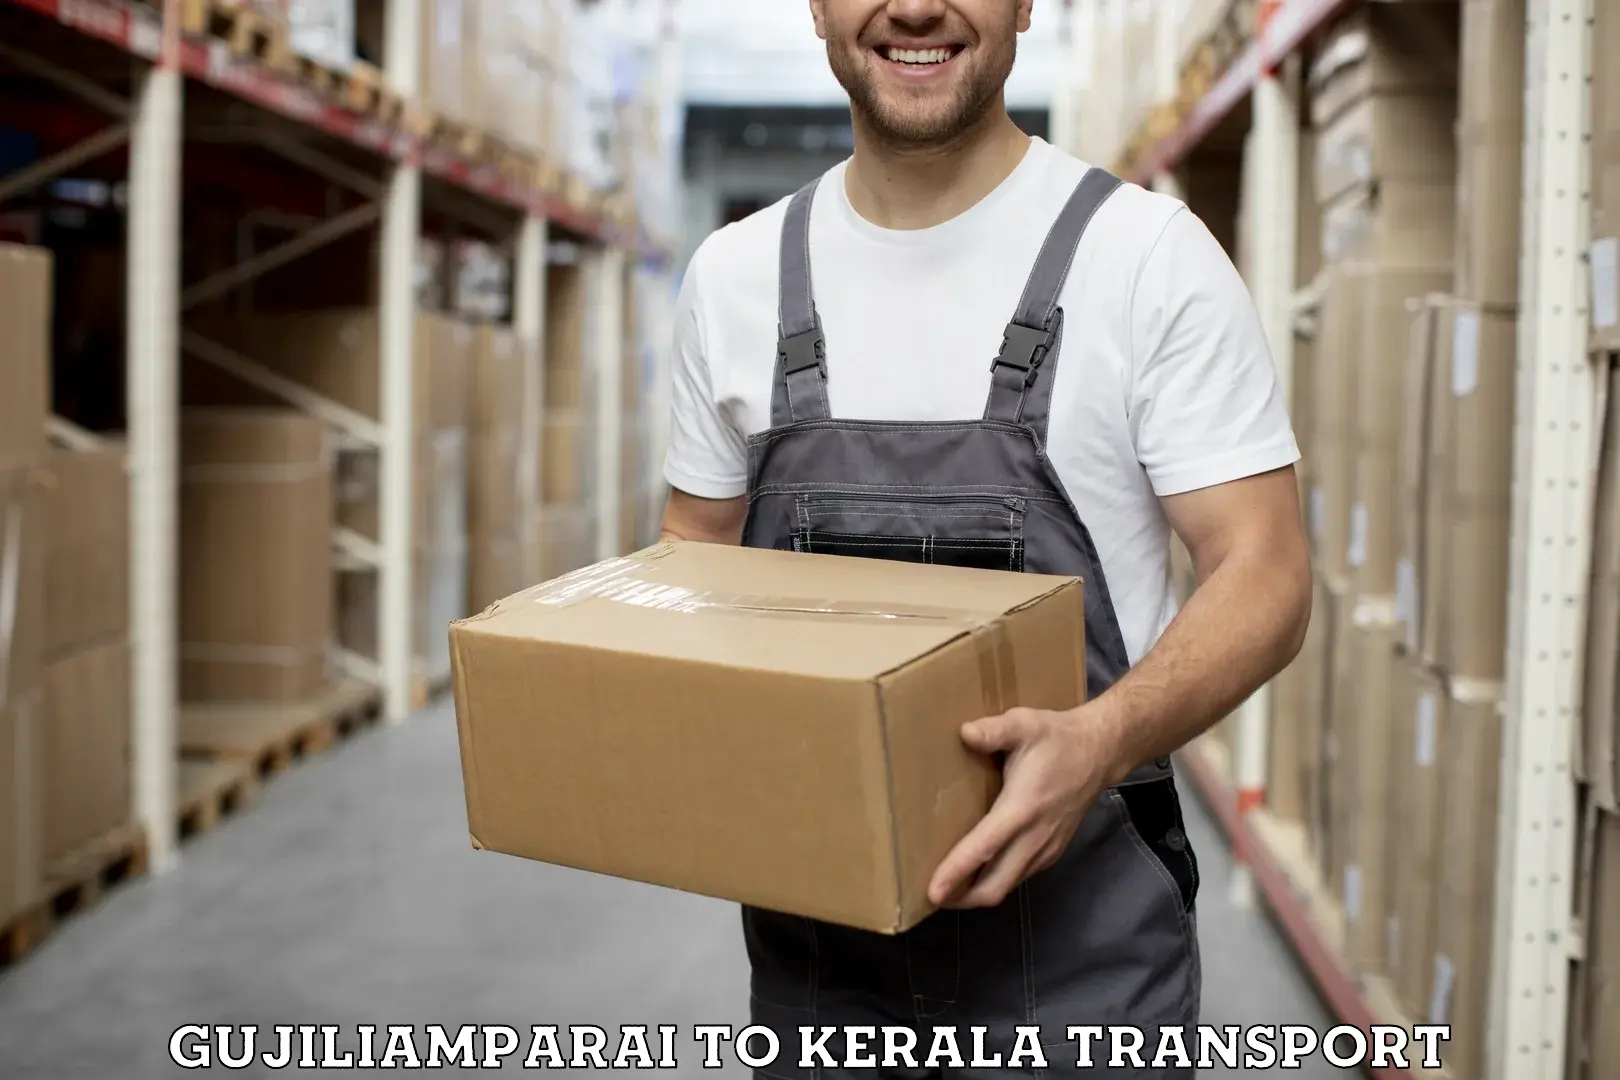 Furniture transport service Gujiliamparai to Thrissur